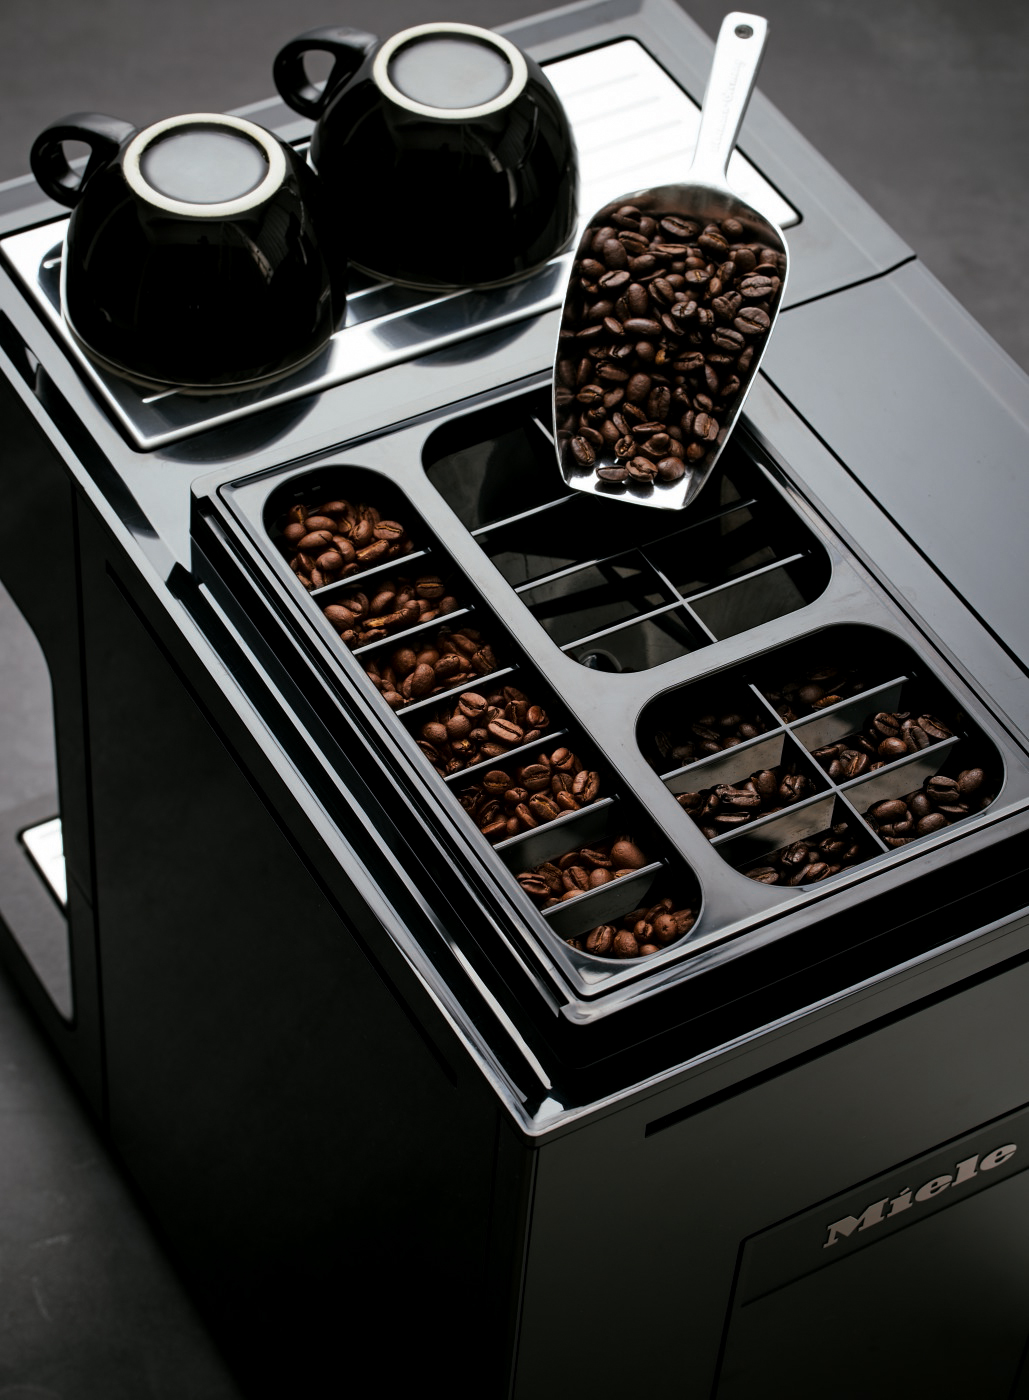 La nouvelle machine à café automatique de Miele offre encore davantage de confort et une diversité de saveurs inédite